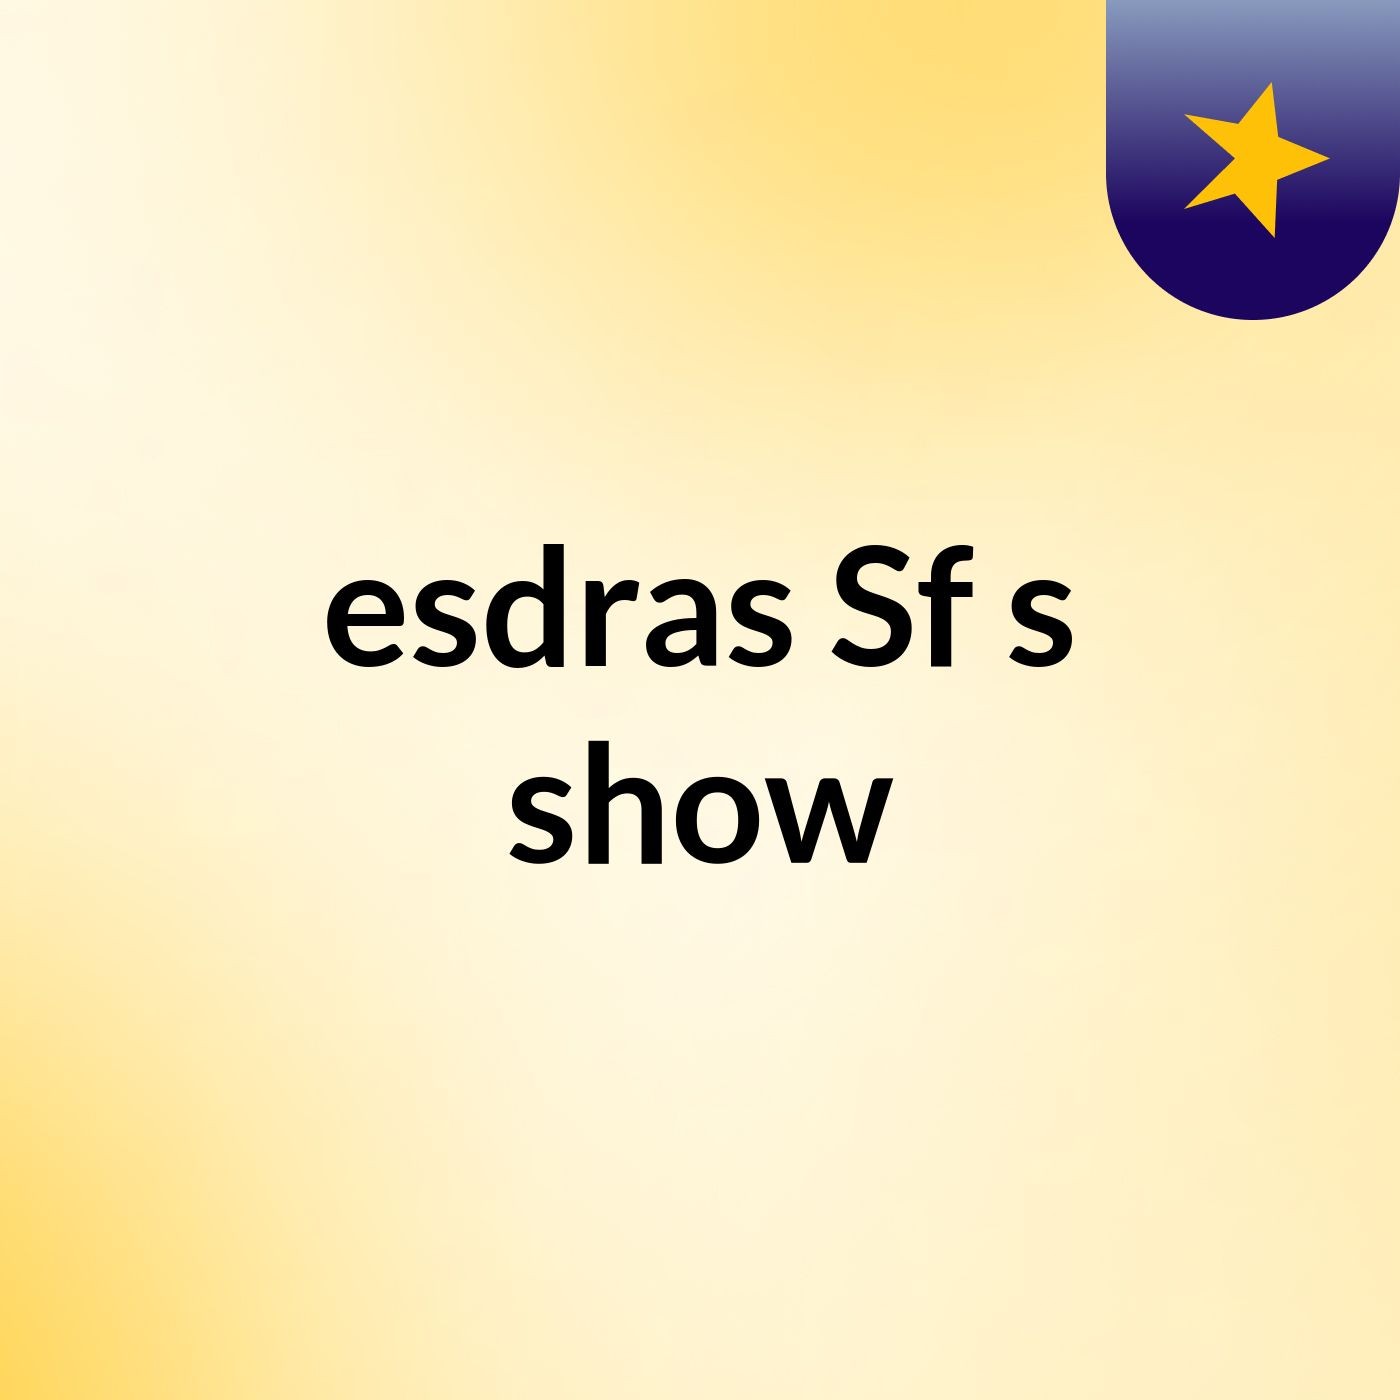 esdras Sf's show